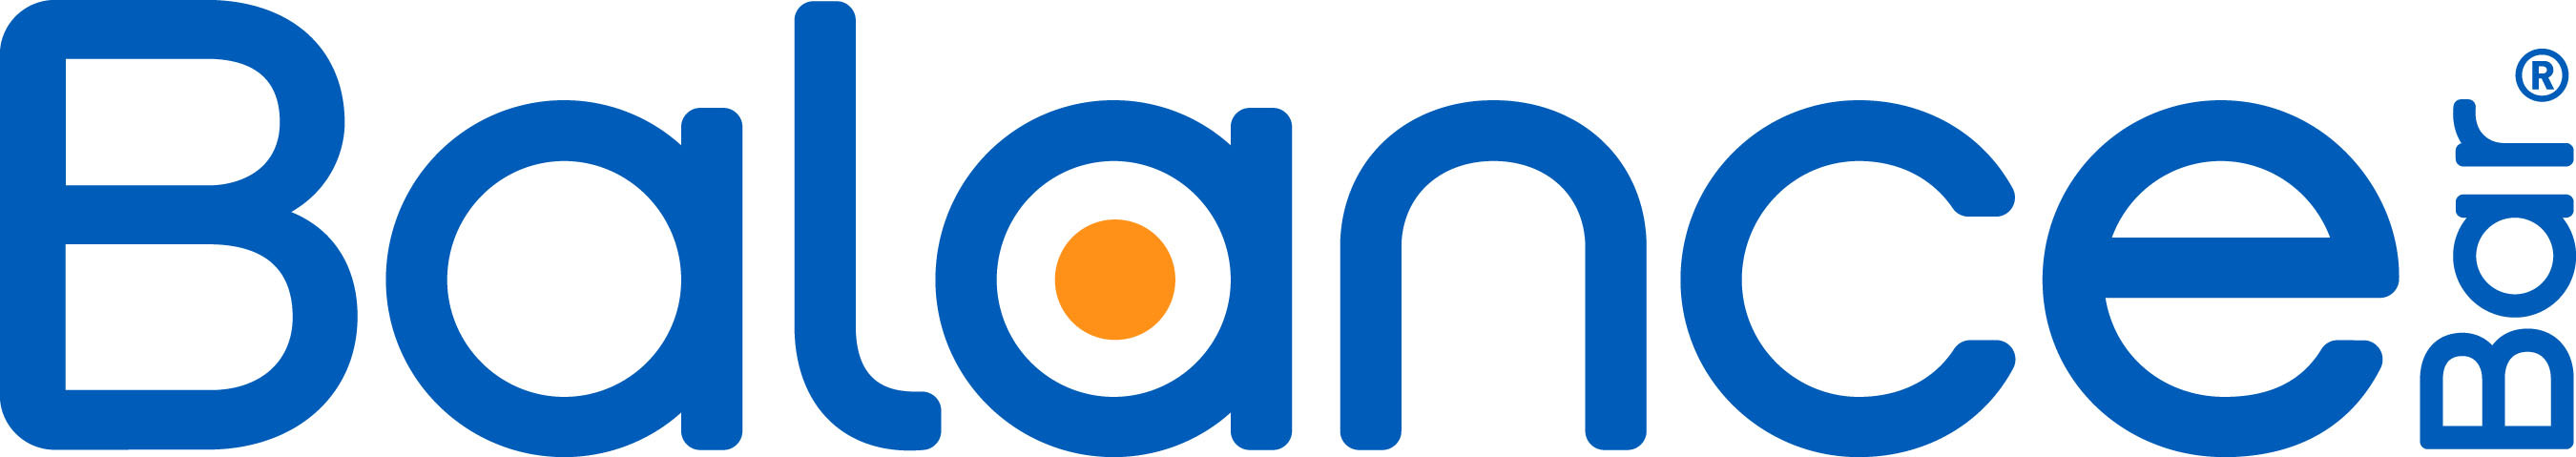 Balance Bar Logo